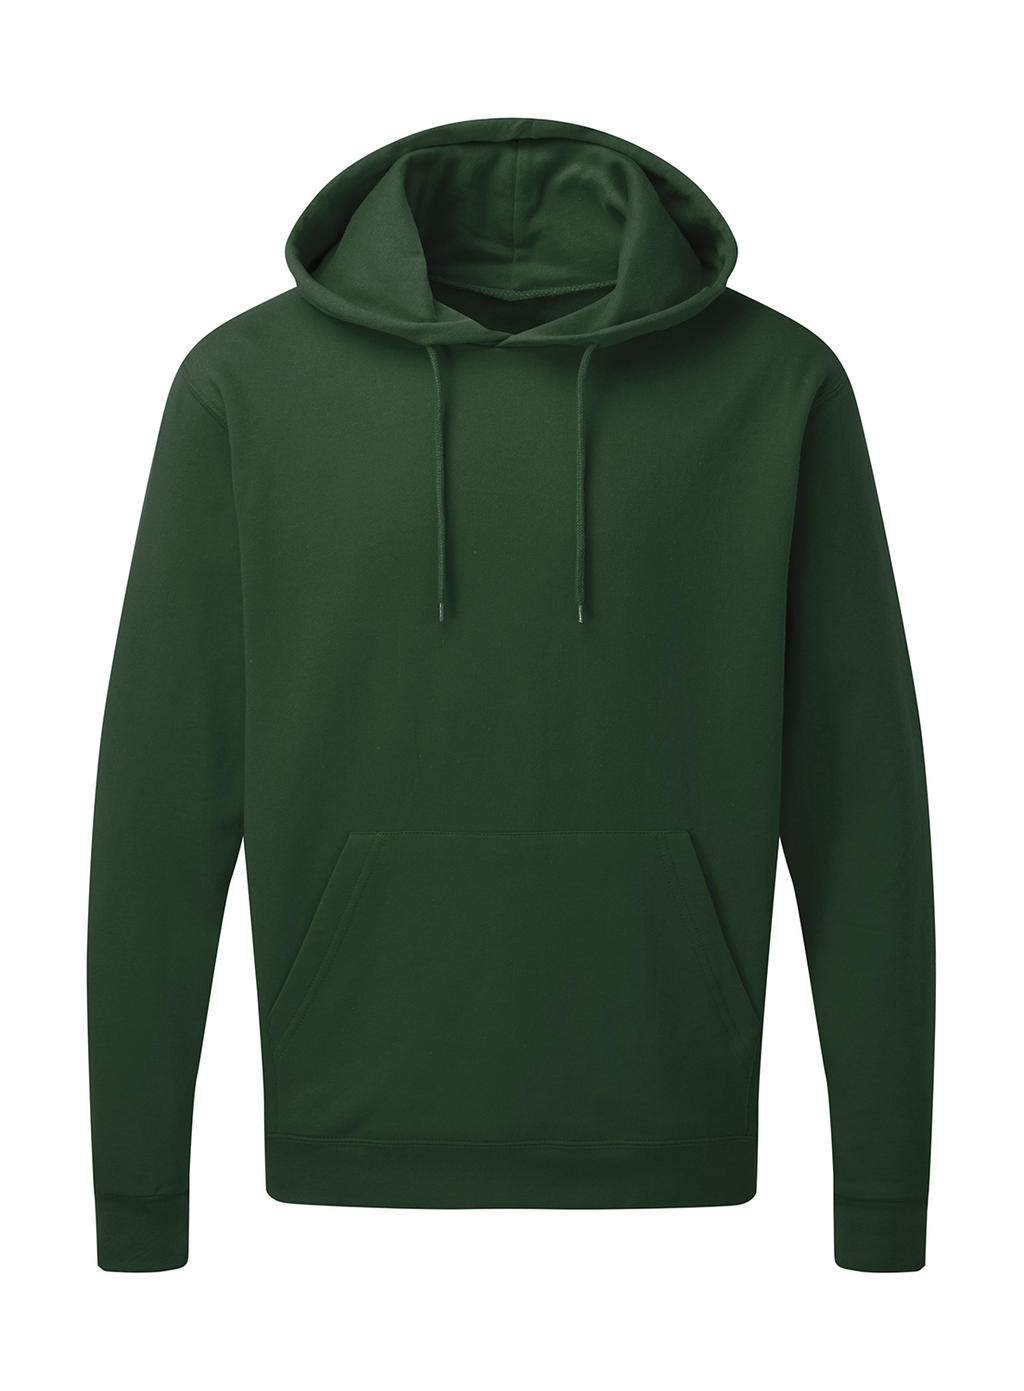  Mens Hooded Sweatshirt in Farbe Bottle Green